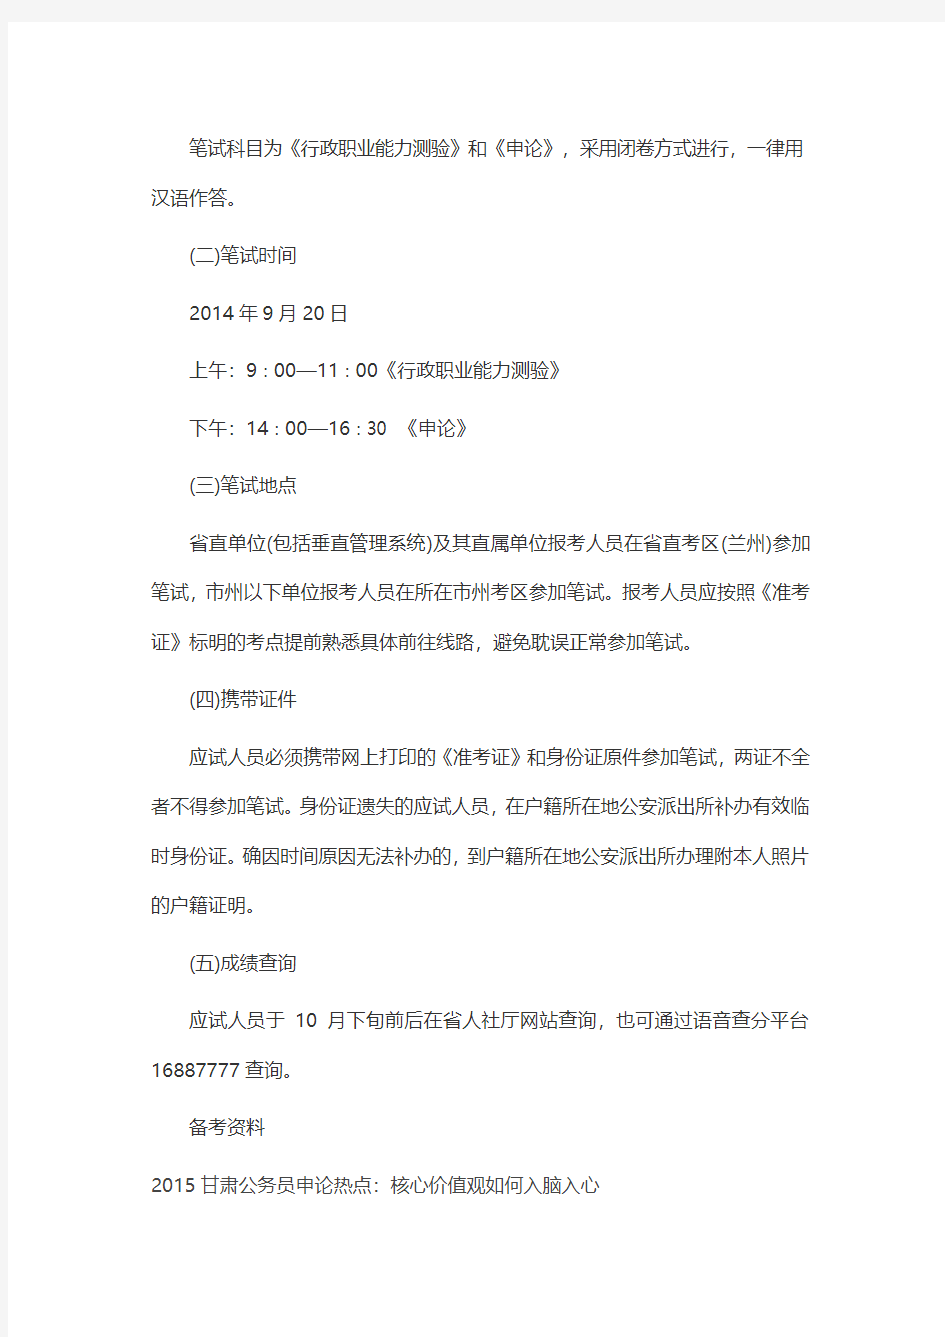 2015甘肃省公务员考试公告